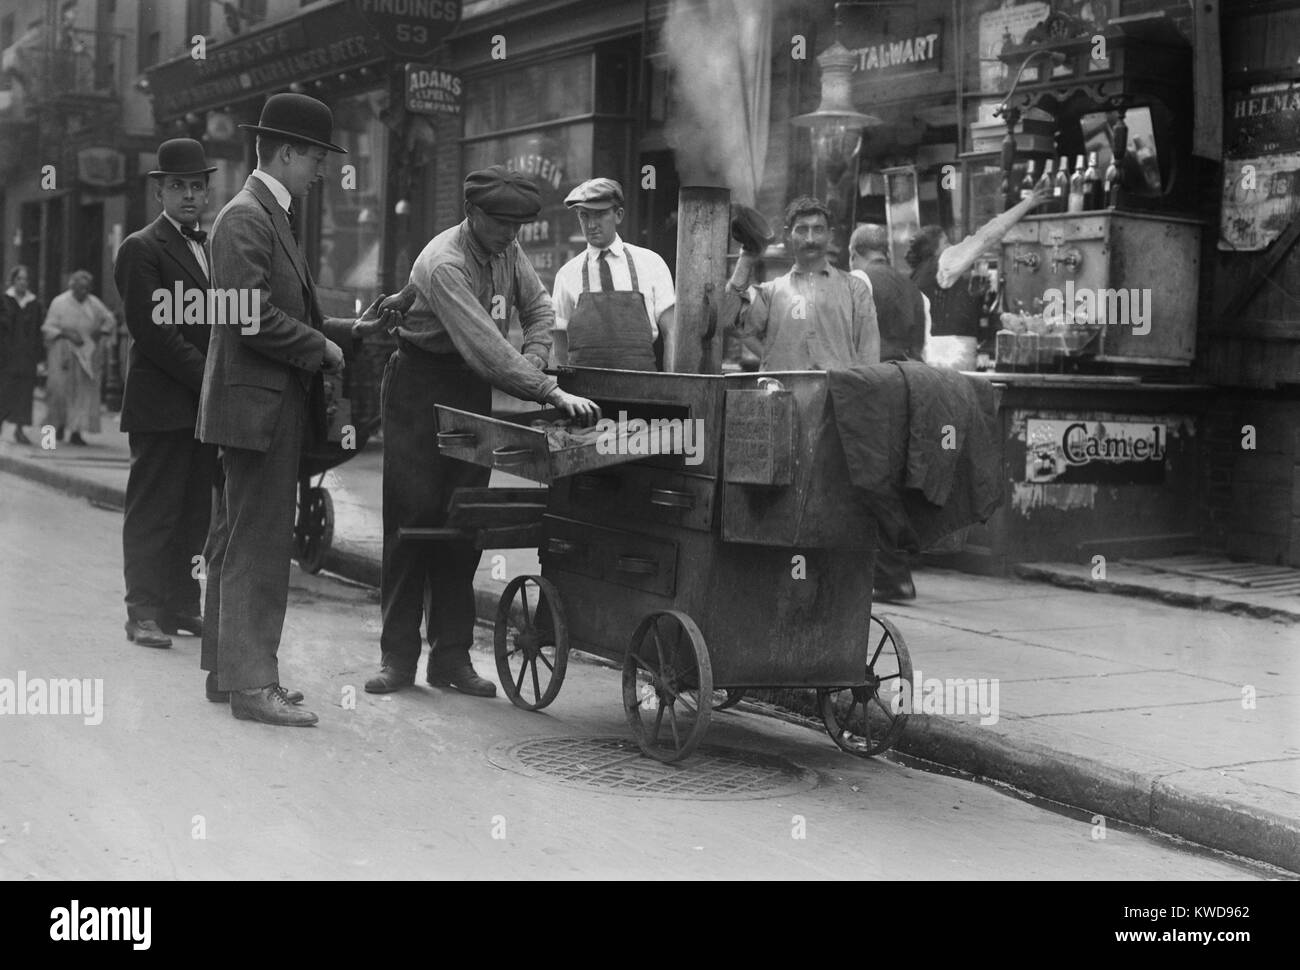 Patate al forno fornitore con un forno pushcart in New York del Lower East Side, c. 1915-20. Il quartiere è stato impaccato con Europeo Orientale immigrati ebrei (BSLOC 2016 8 81) Foto Stock